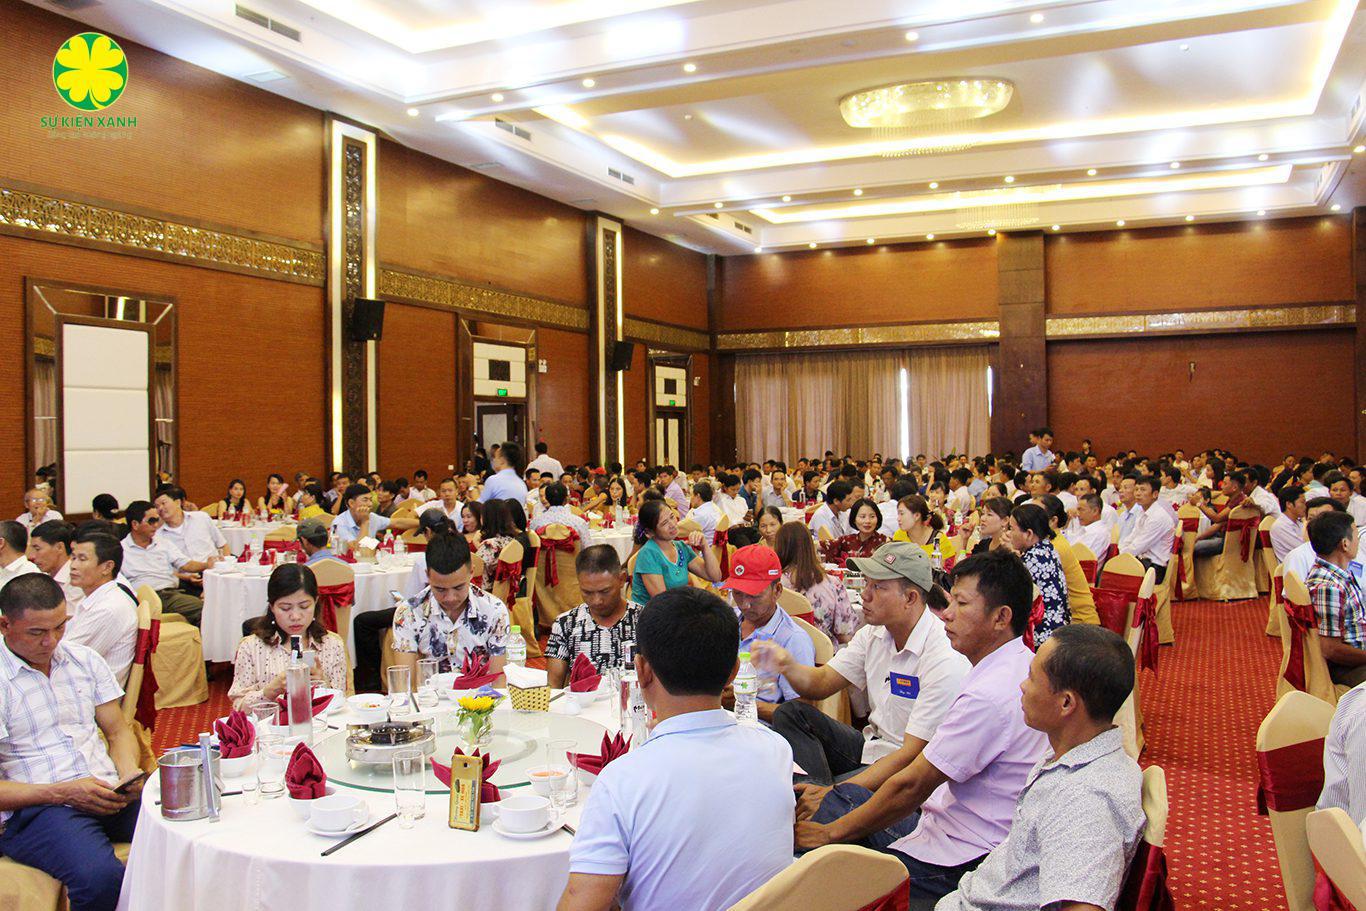 Tổ chức Hội thảo tại Nam Định, Sự Kiện Xanh, Viet Green Media